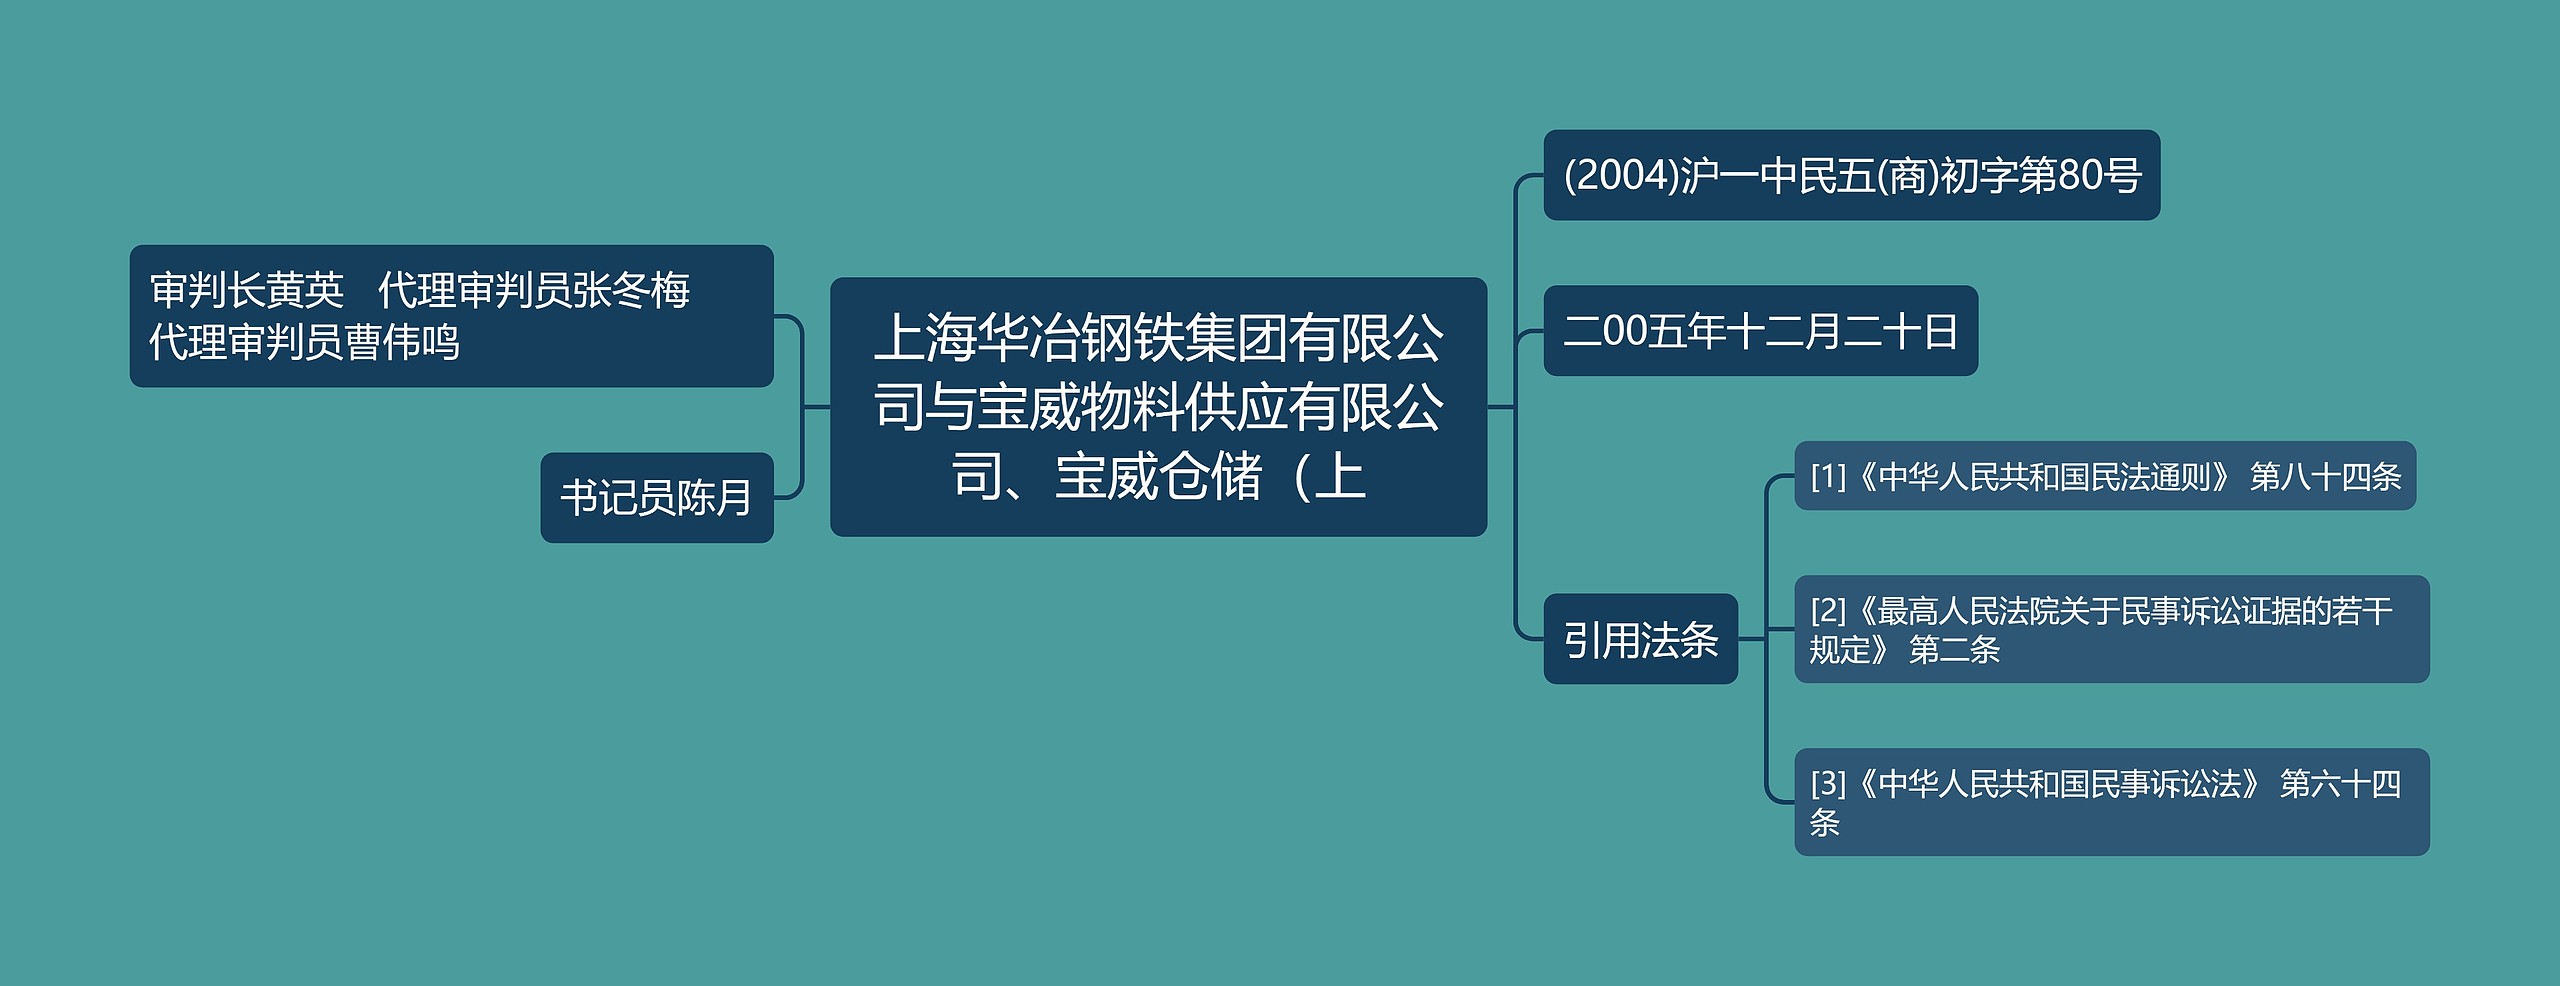 上海华冶钢铁集团有限公司与宝威物料供应有限公司、宝威仓储（上思维导图